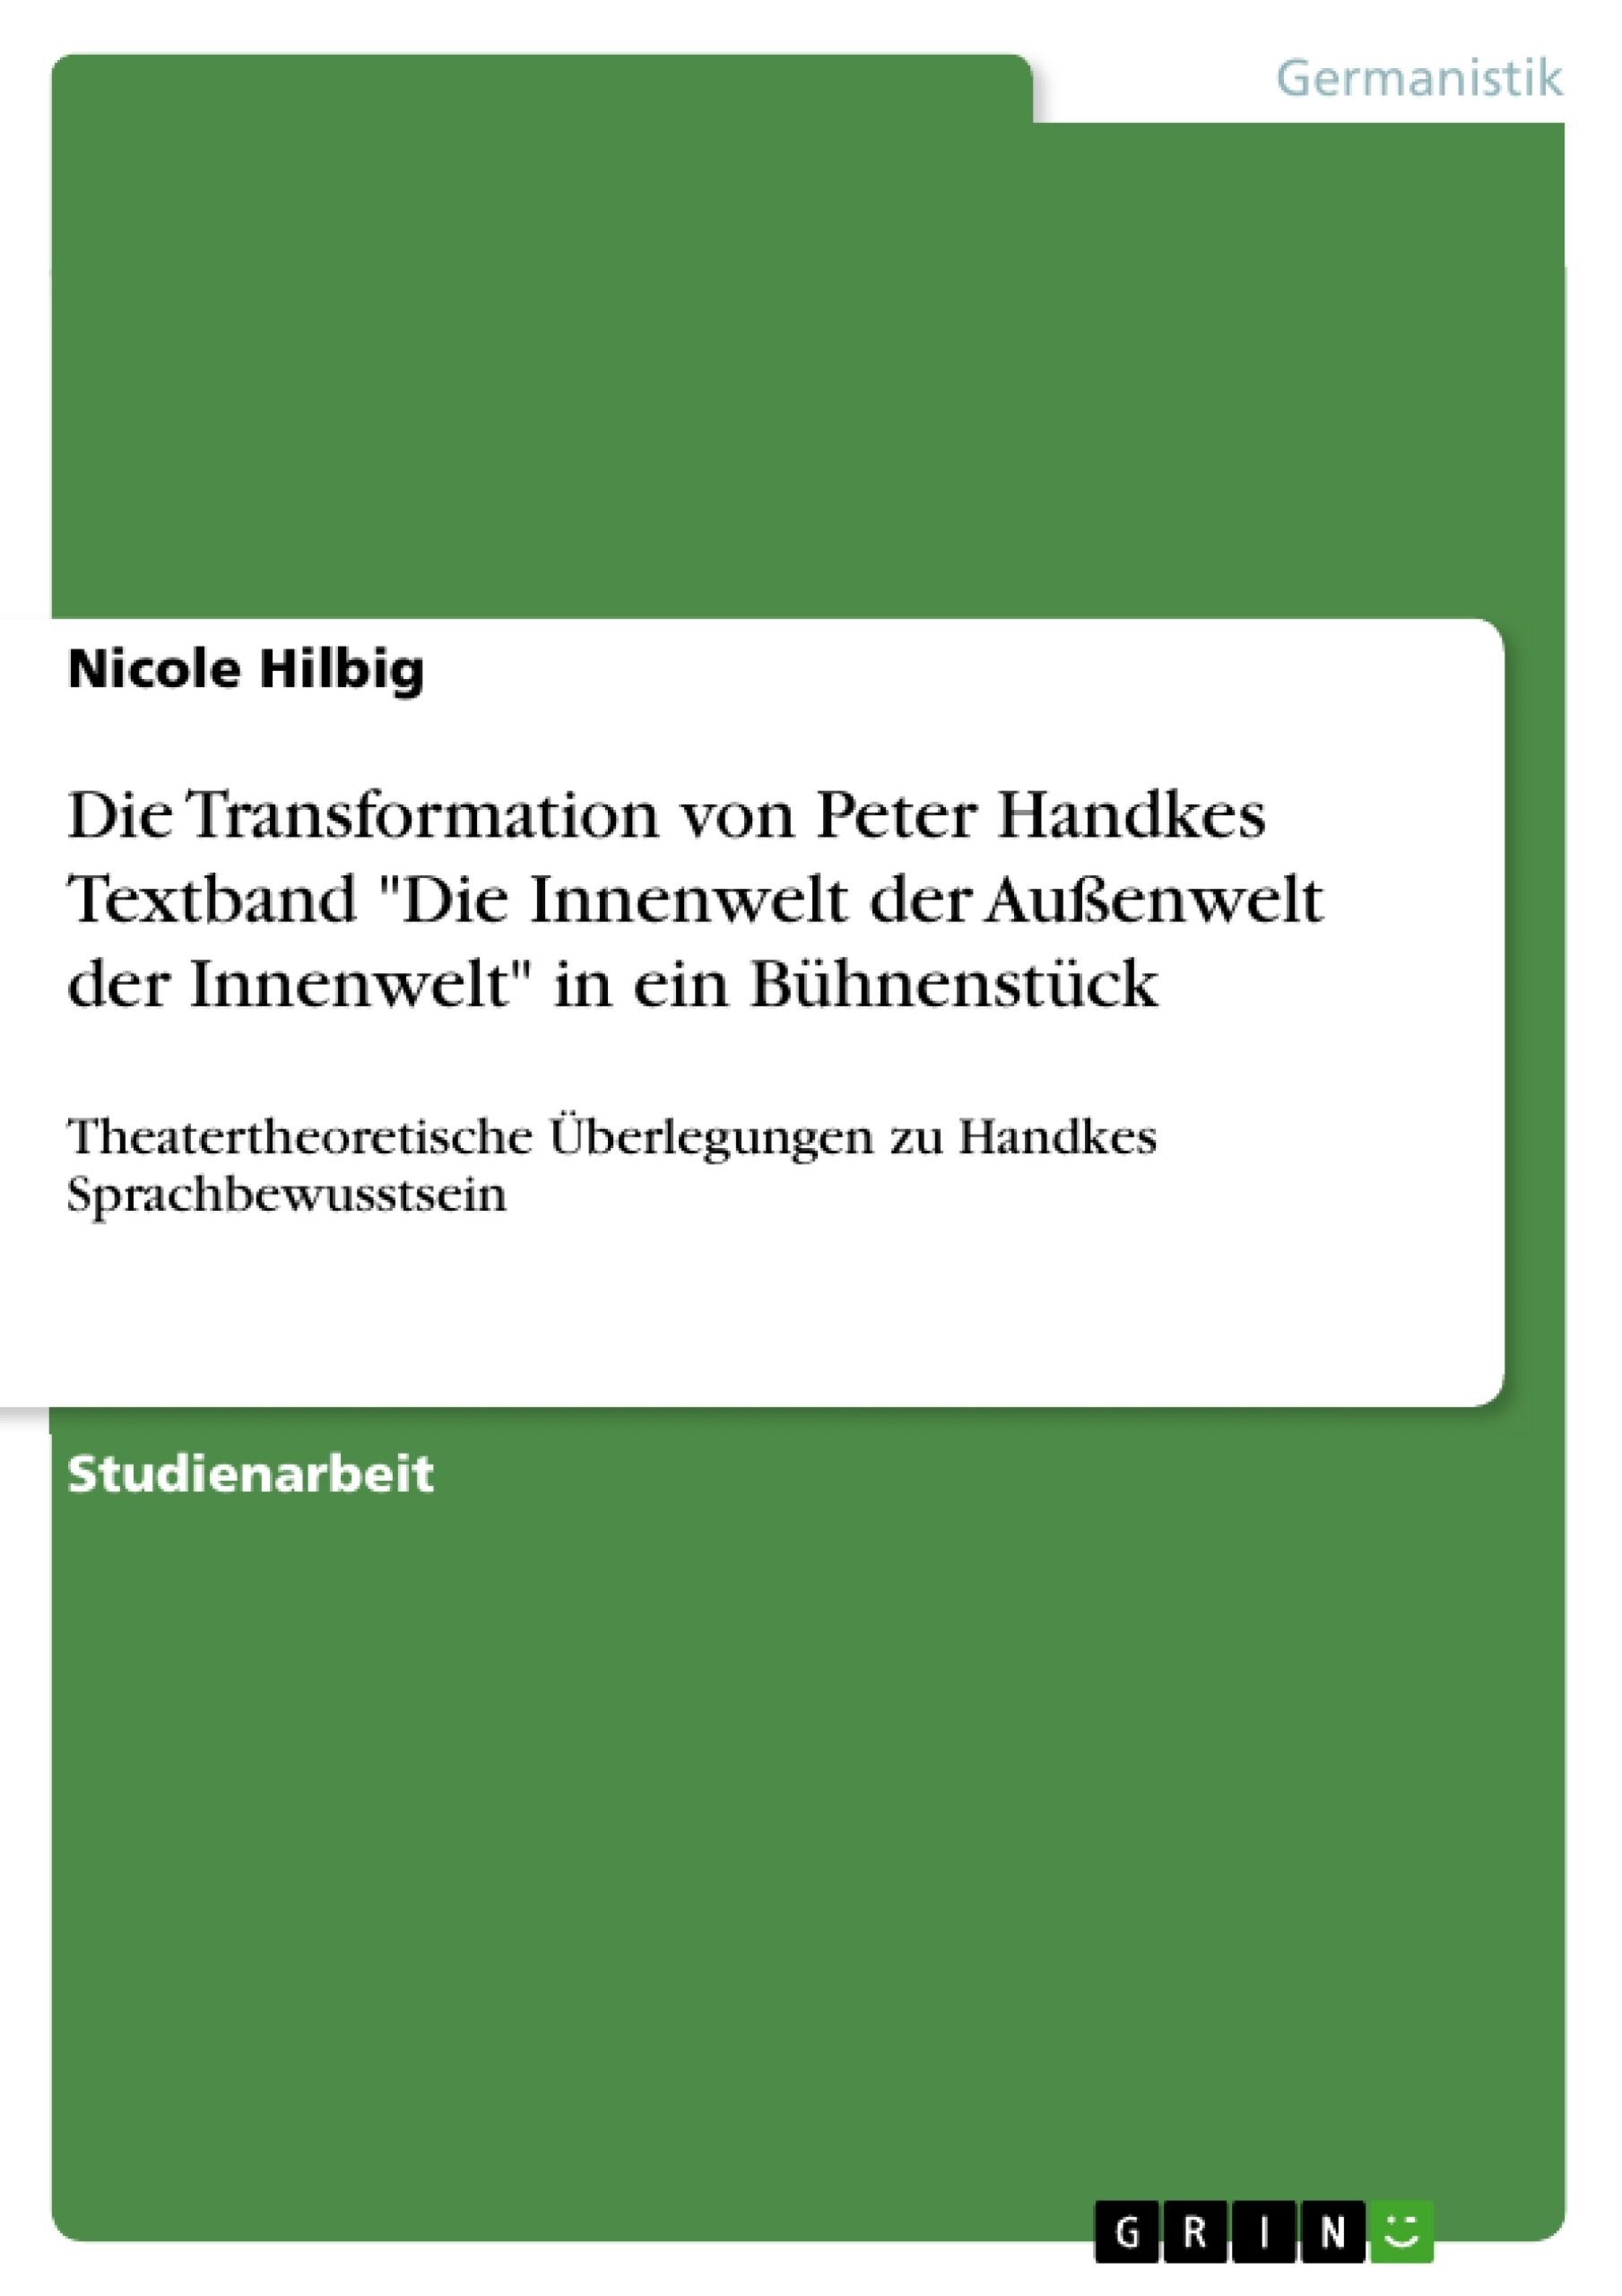 Title: Die Transformation von Peter Handkes Textband "Die Innenwelt der Außenwelt der Innenwelt" in ein Bühnenstück